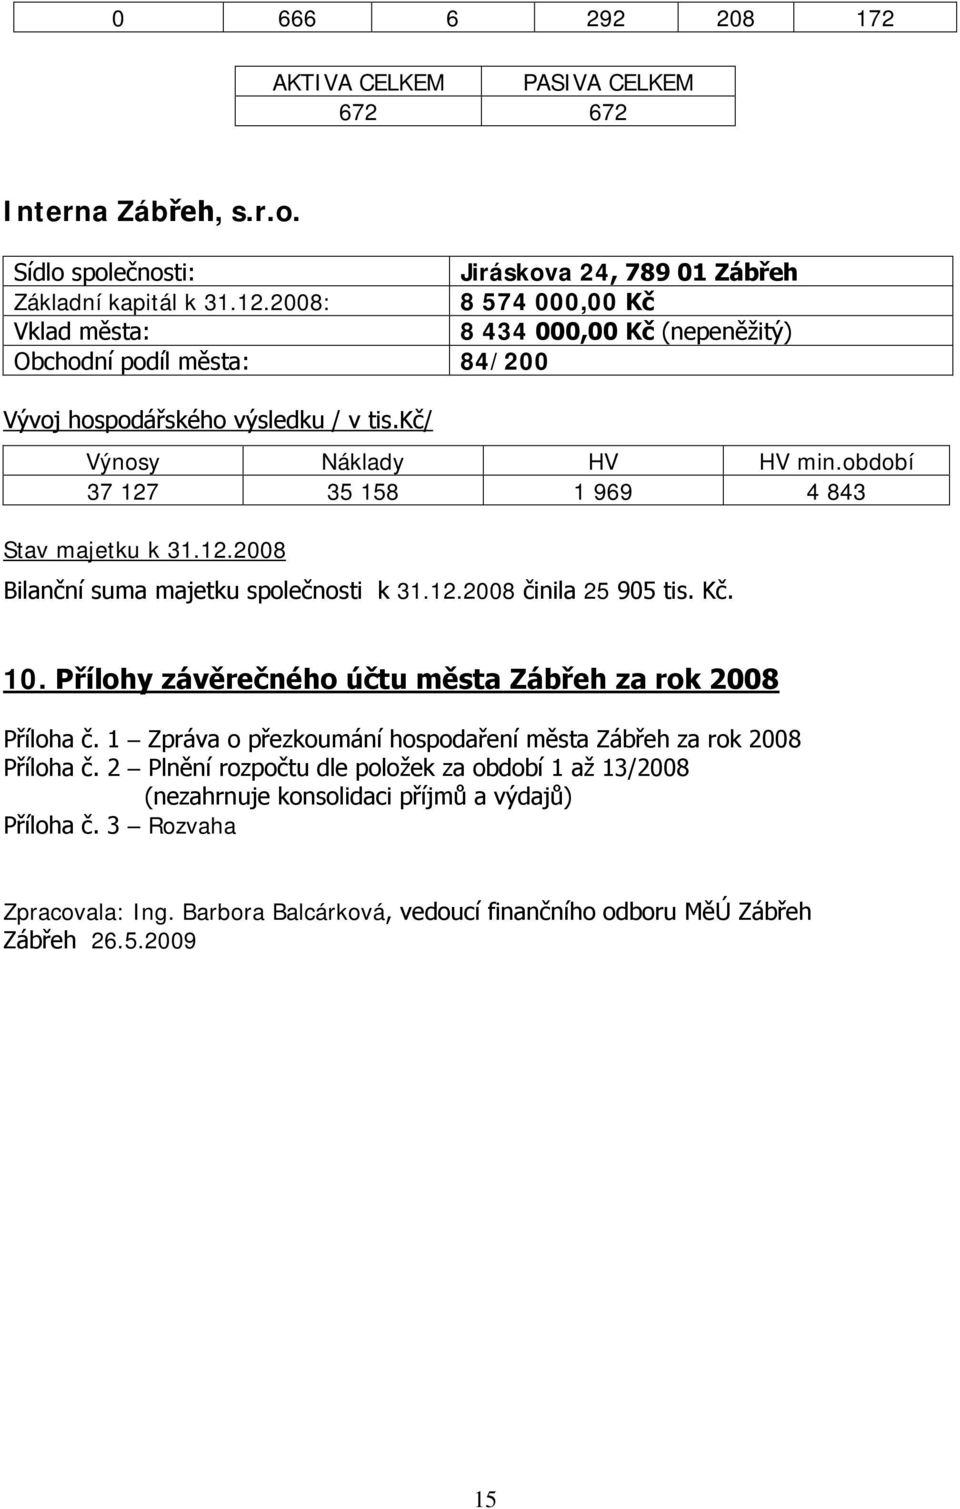 období 37 127 35 158 1 969 4 843 Stav majetku k 31.12.2008 Bilanční suma majetku společnosti k 31.12.2008 činila 25 905 tis. Kč. 10. Přílohy závěrečného účtu města Zábřeh za rok 2008 Příloha č.